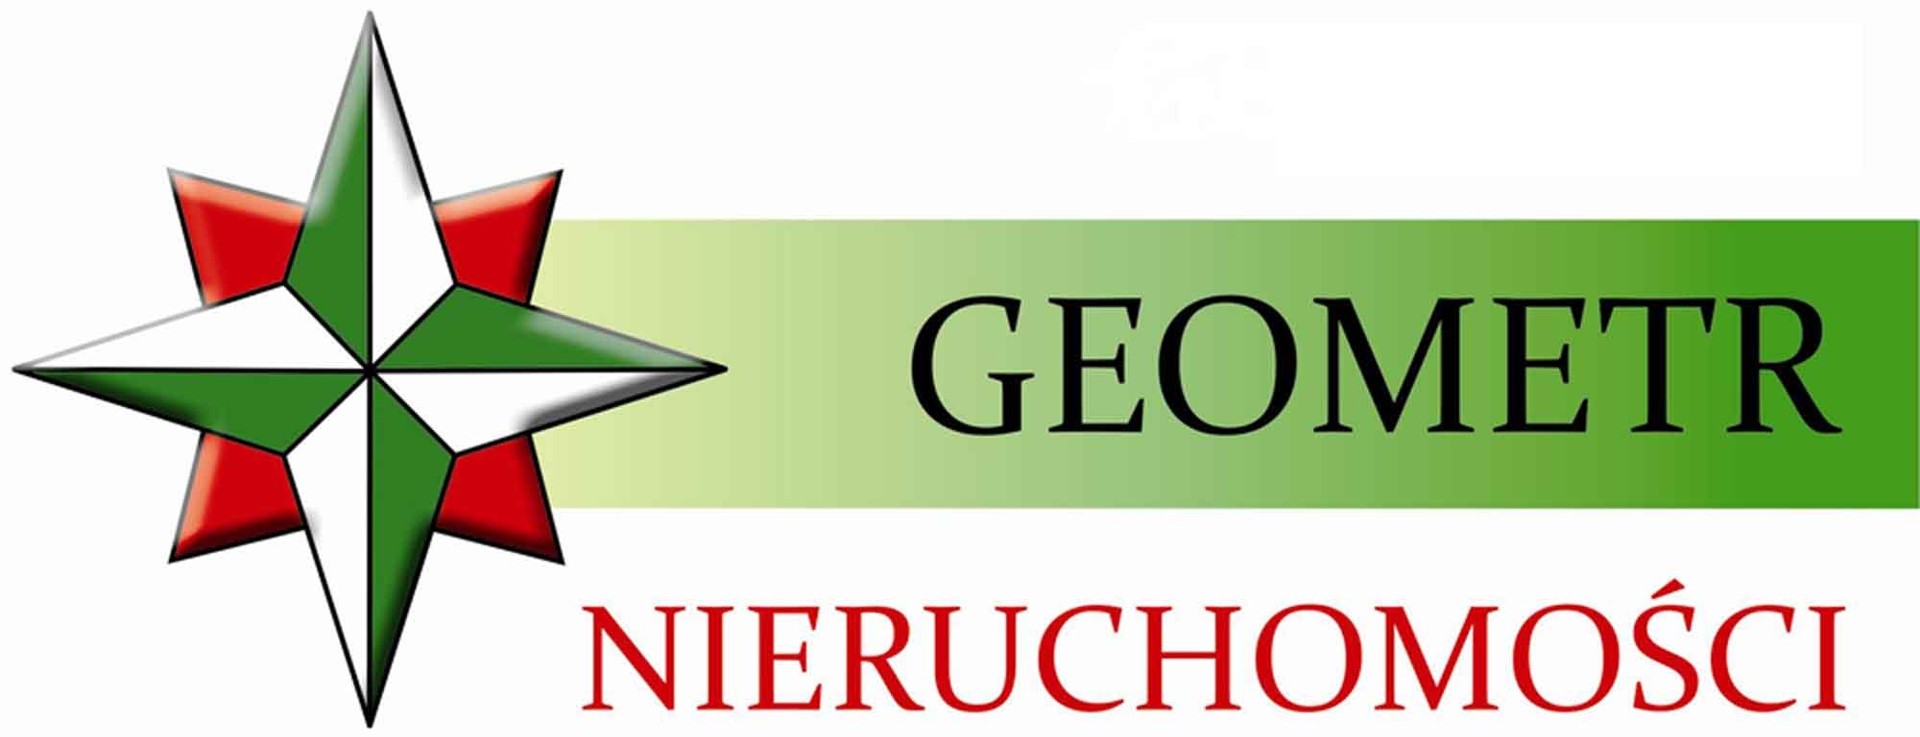 Logo Geometr Nieruchomości